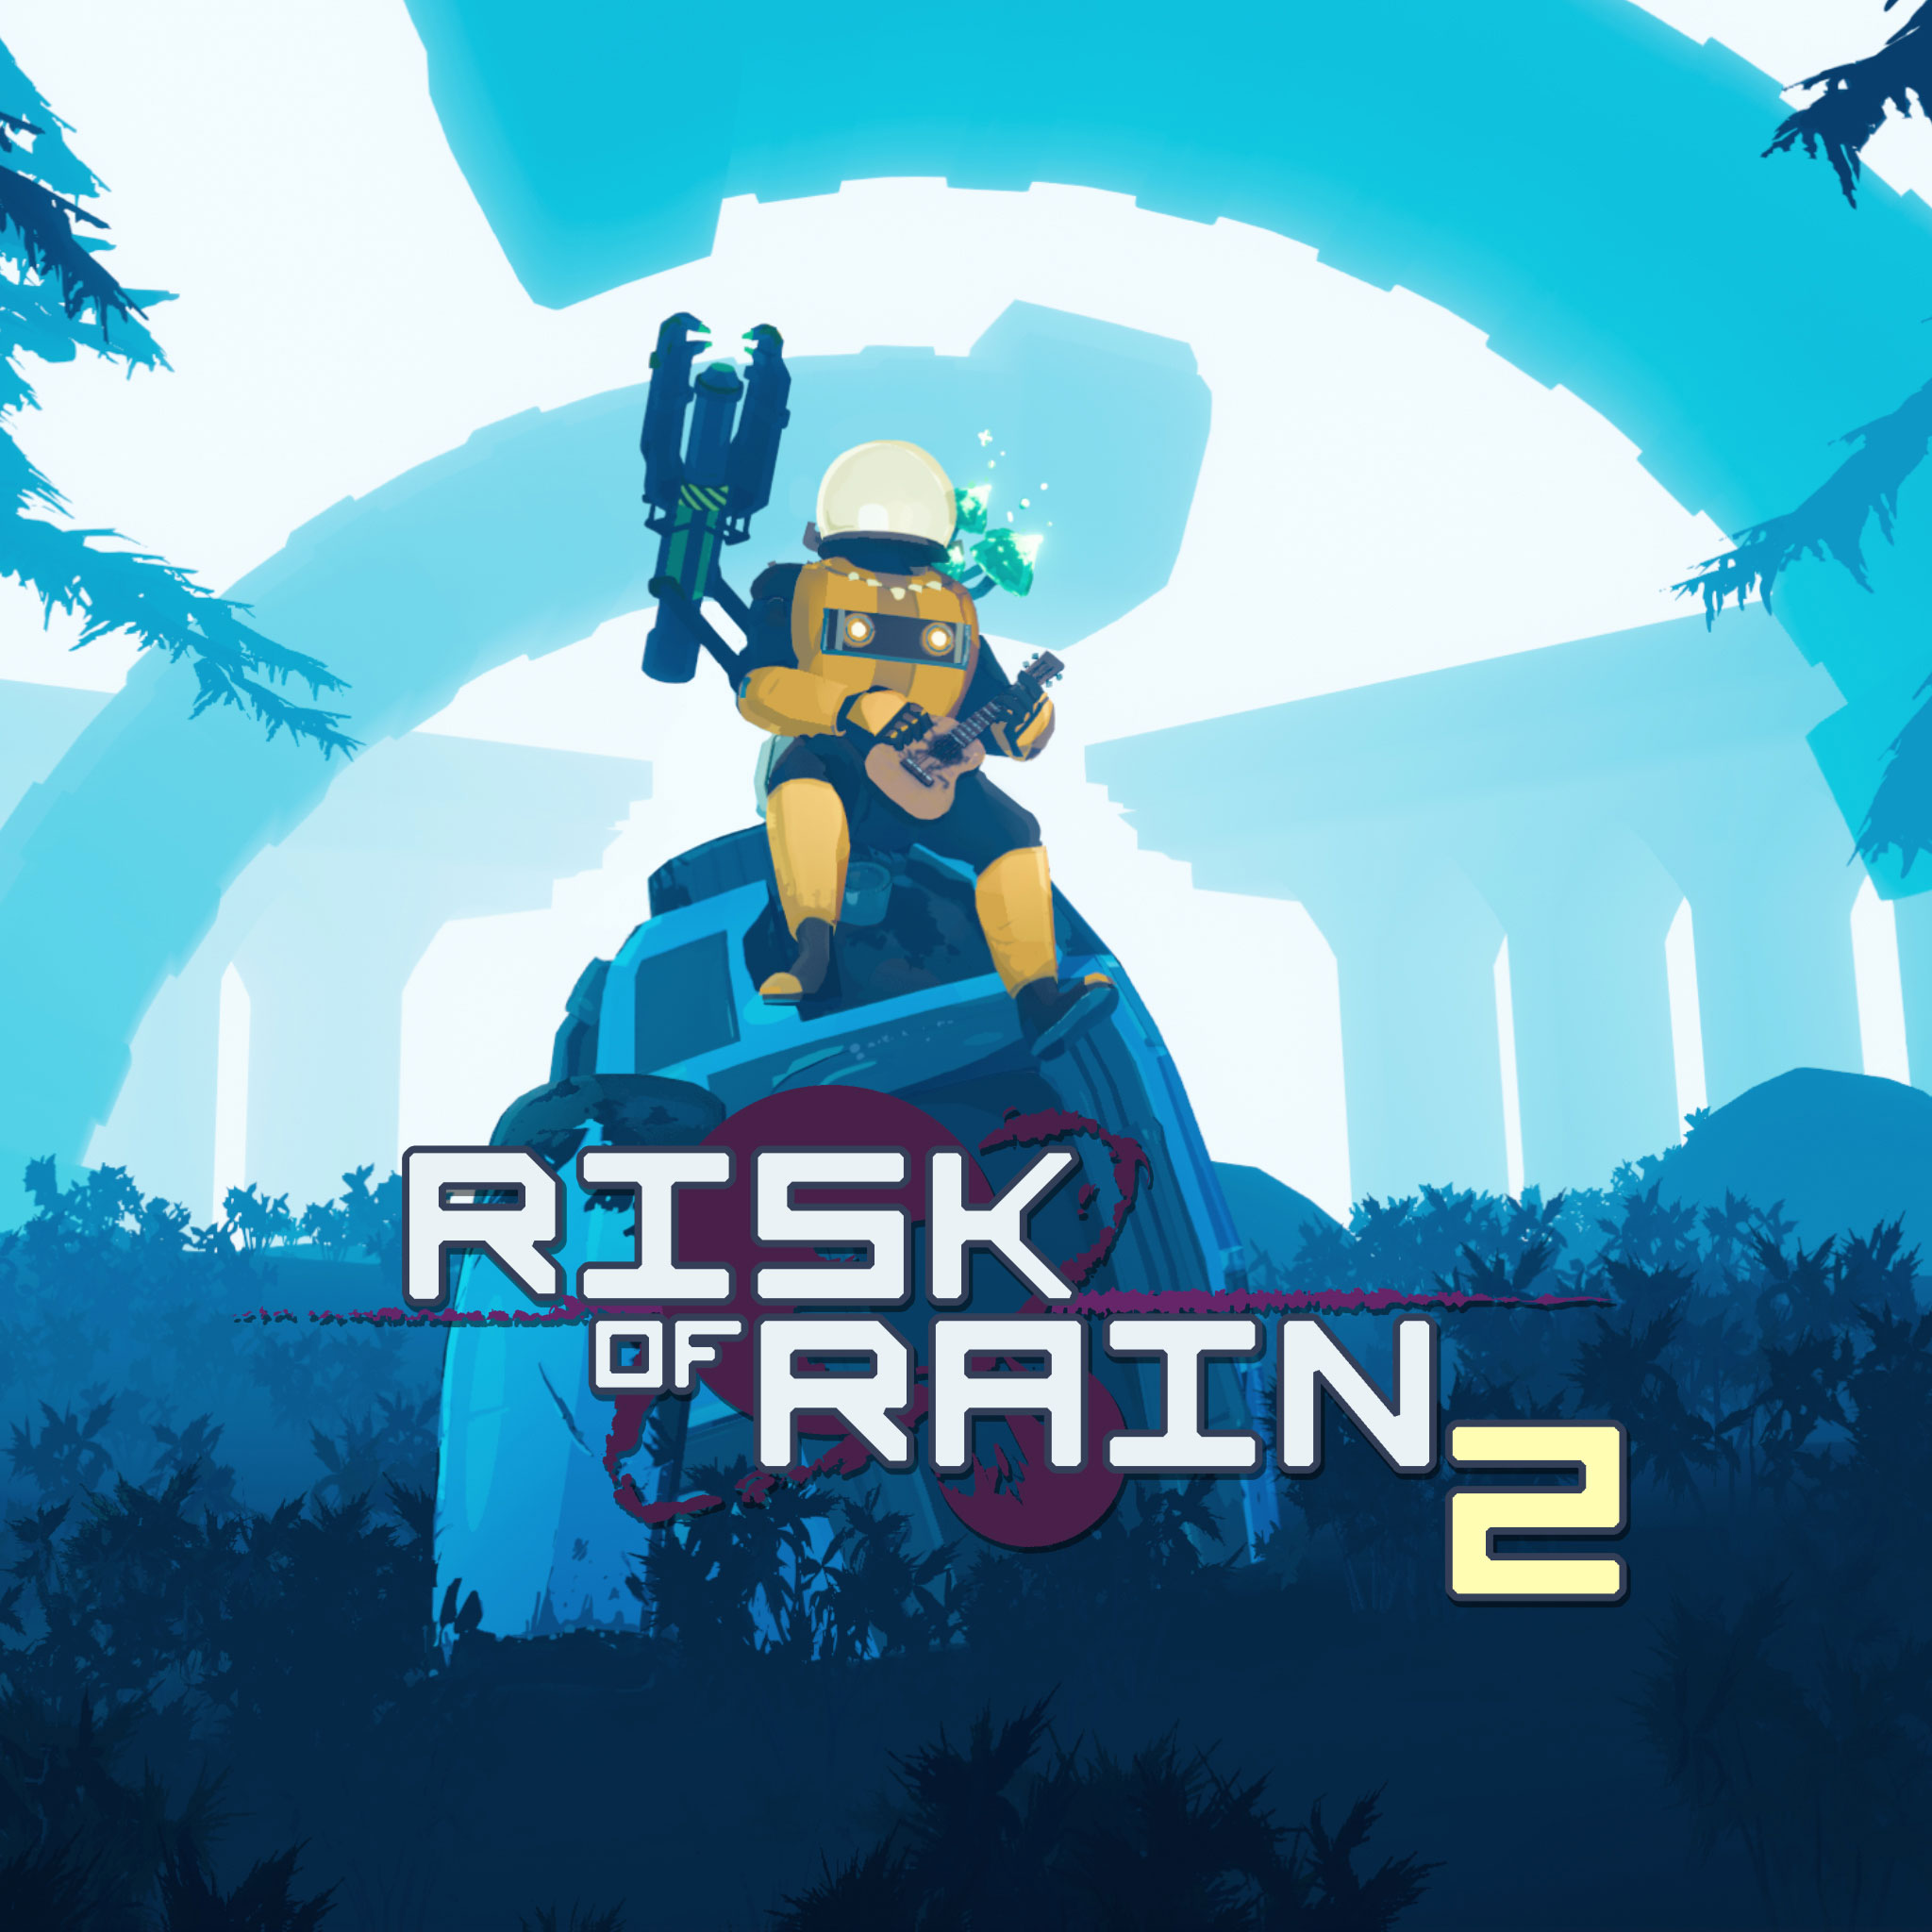 psn risk of rain 2